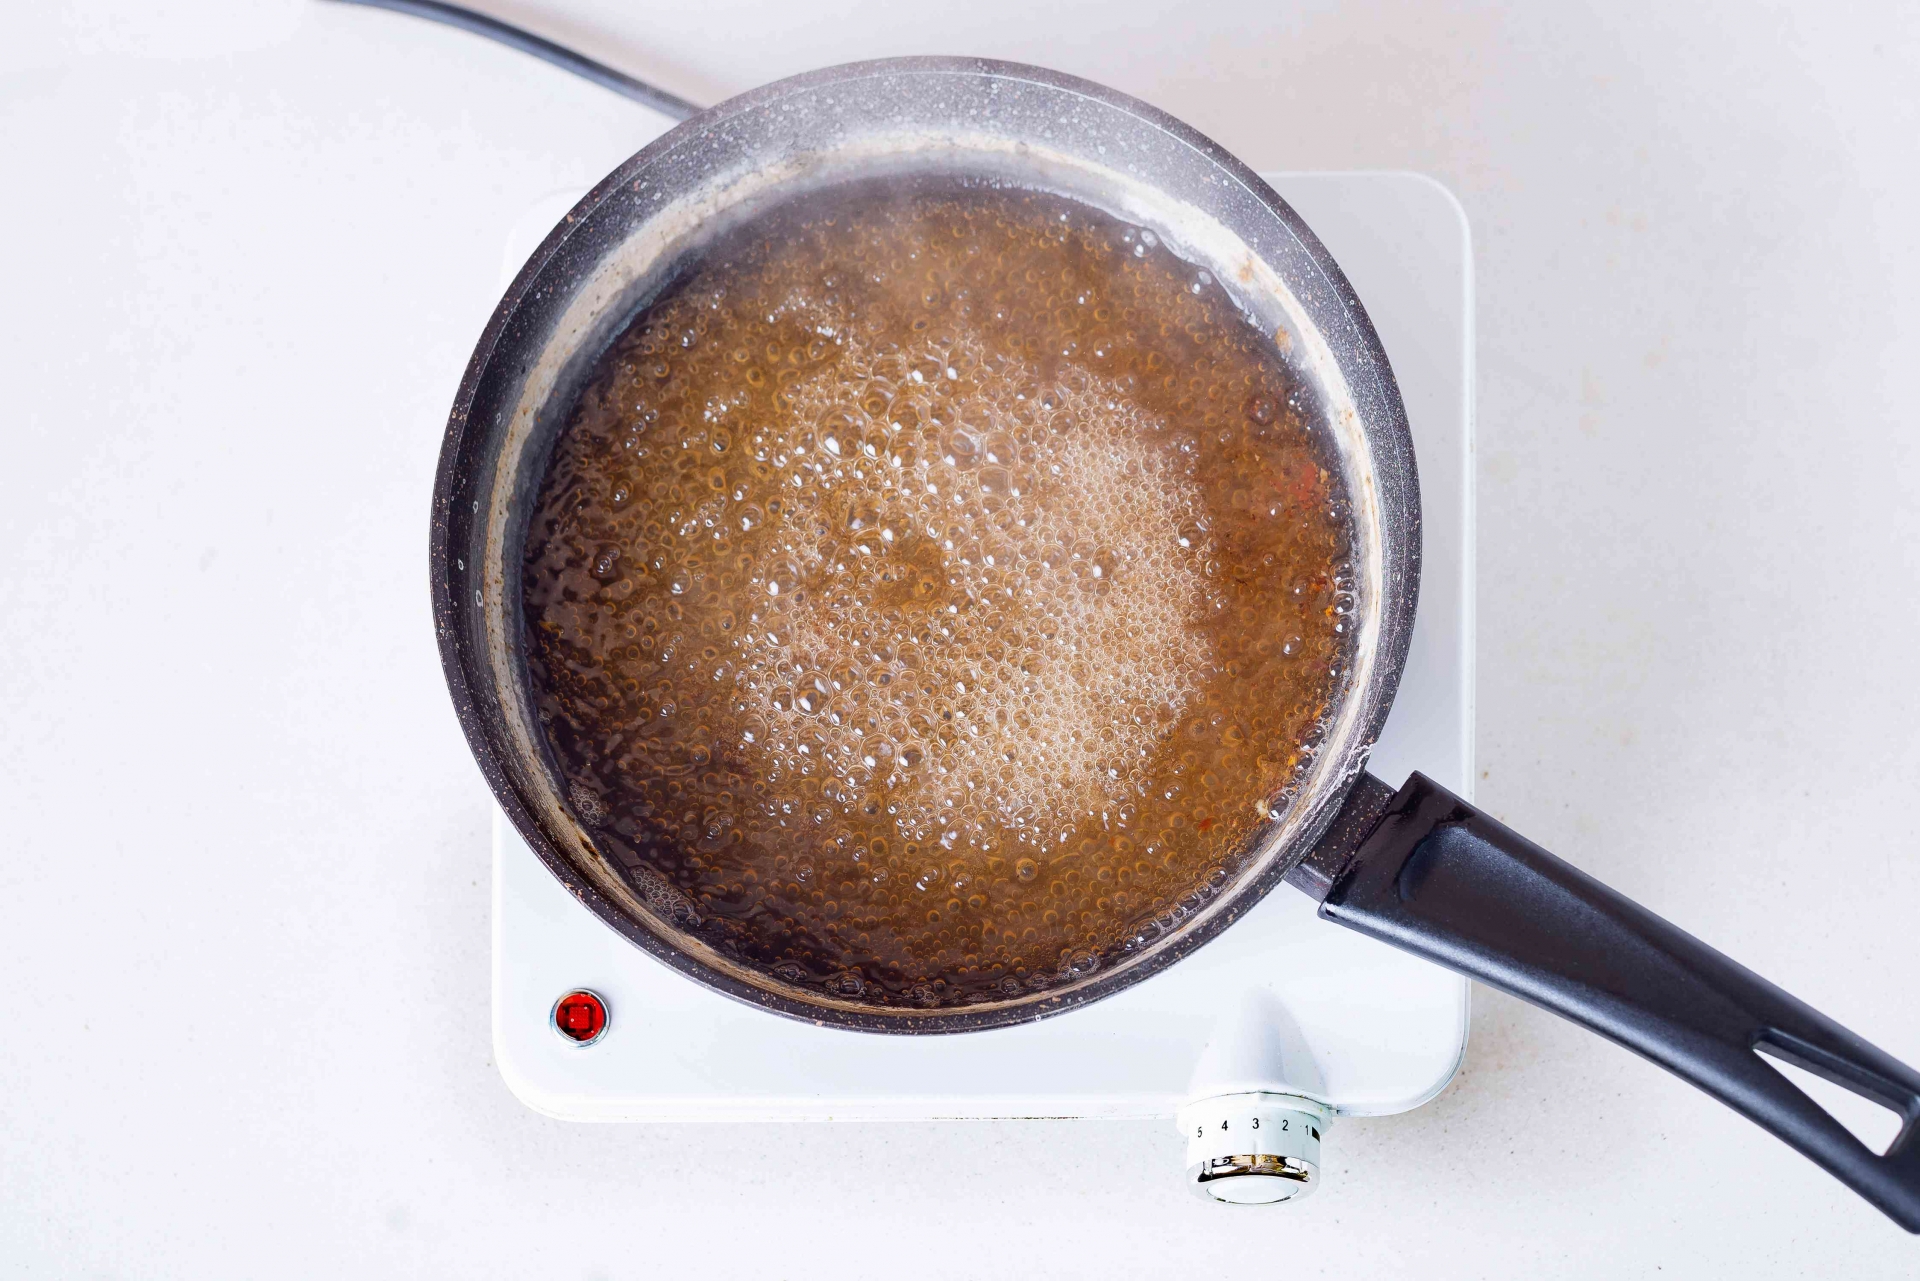 Đặt chảo lên bếp và đun sôi dung dịch baking soda hòa với nước. 